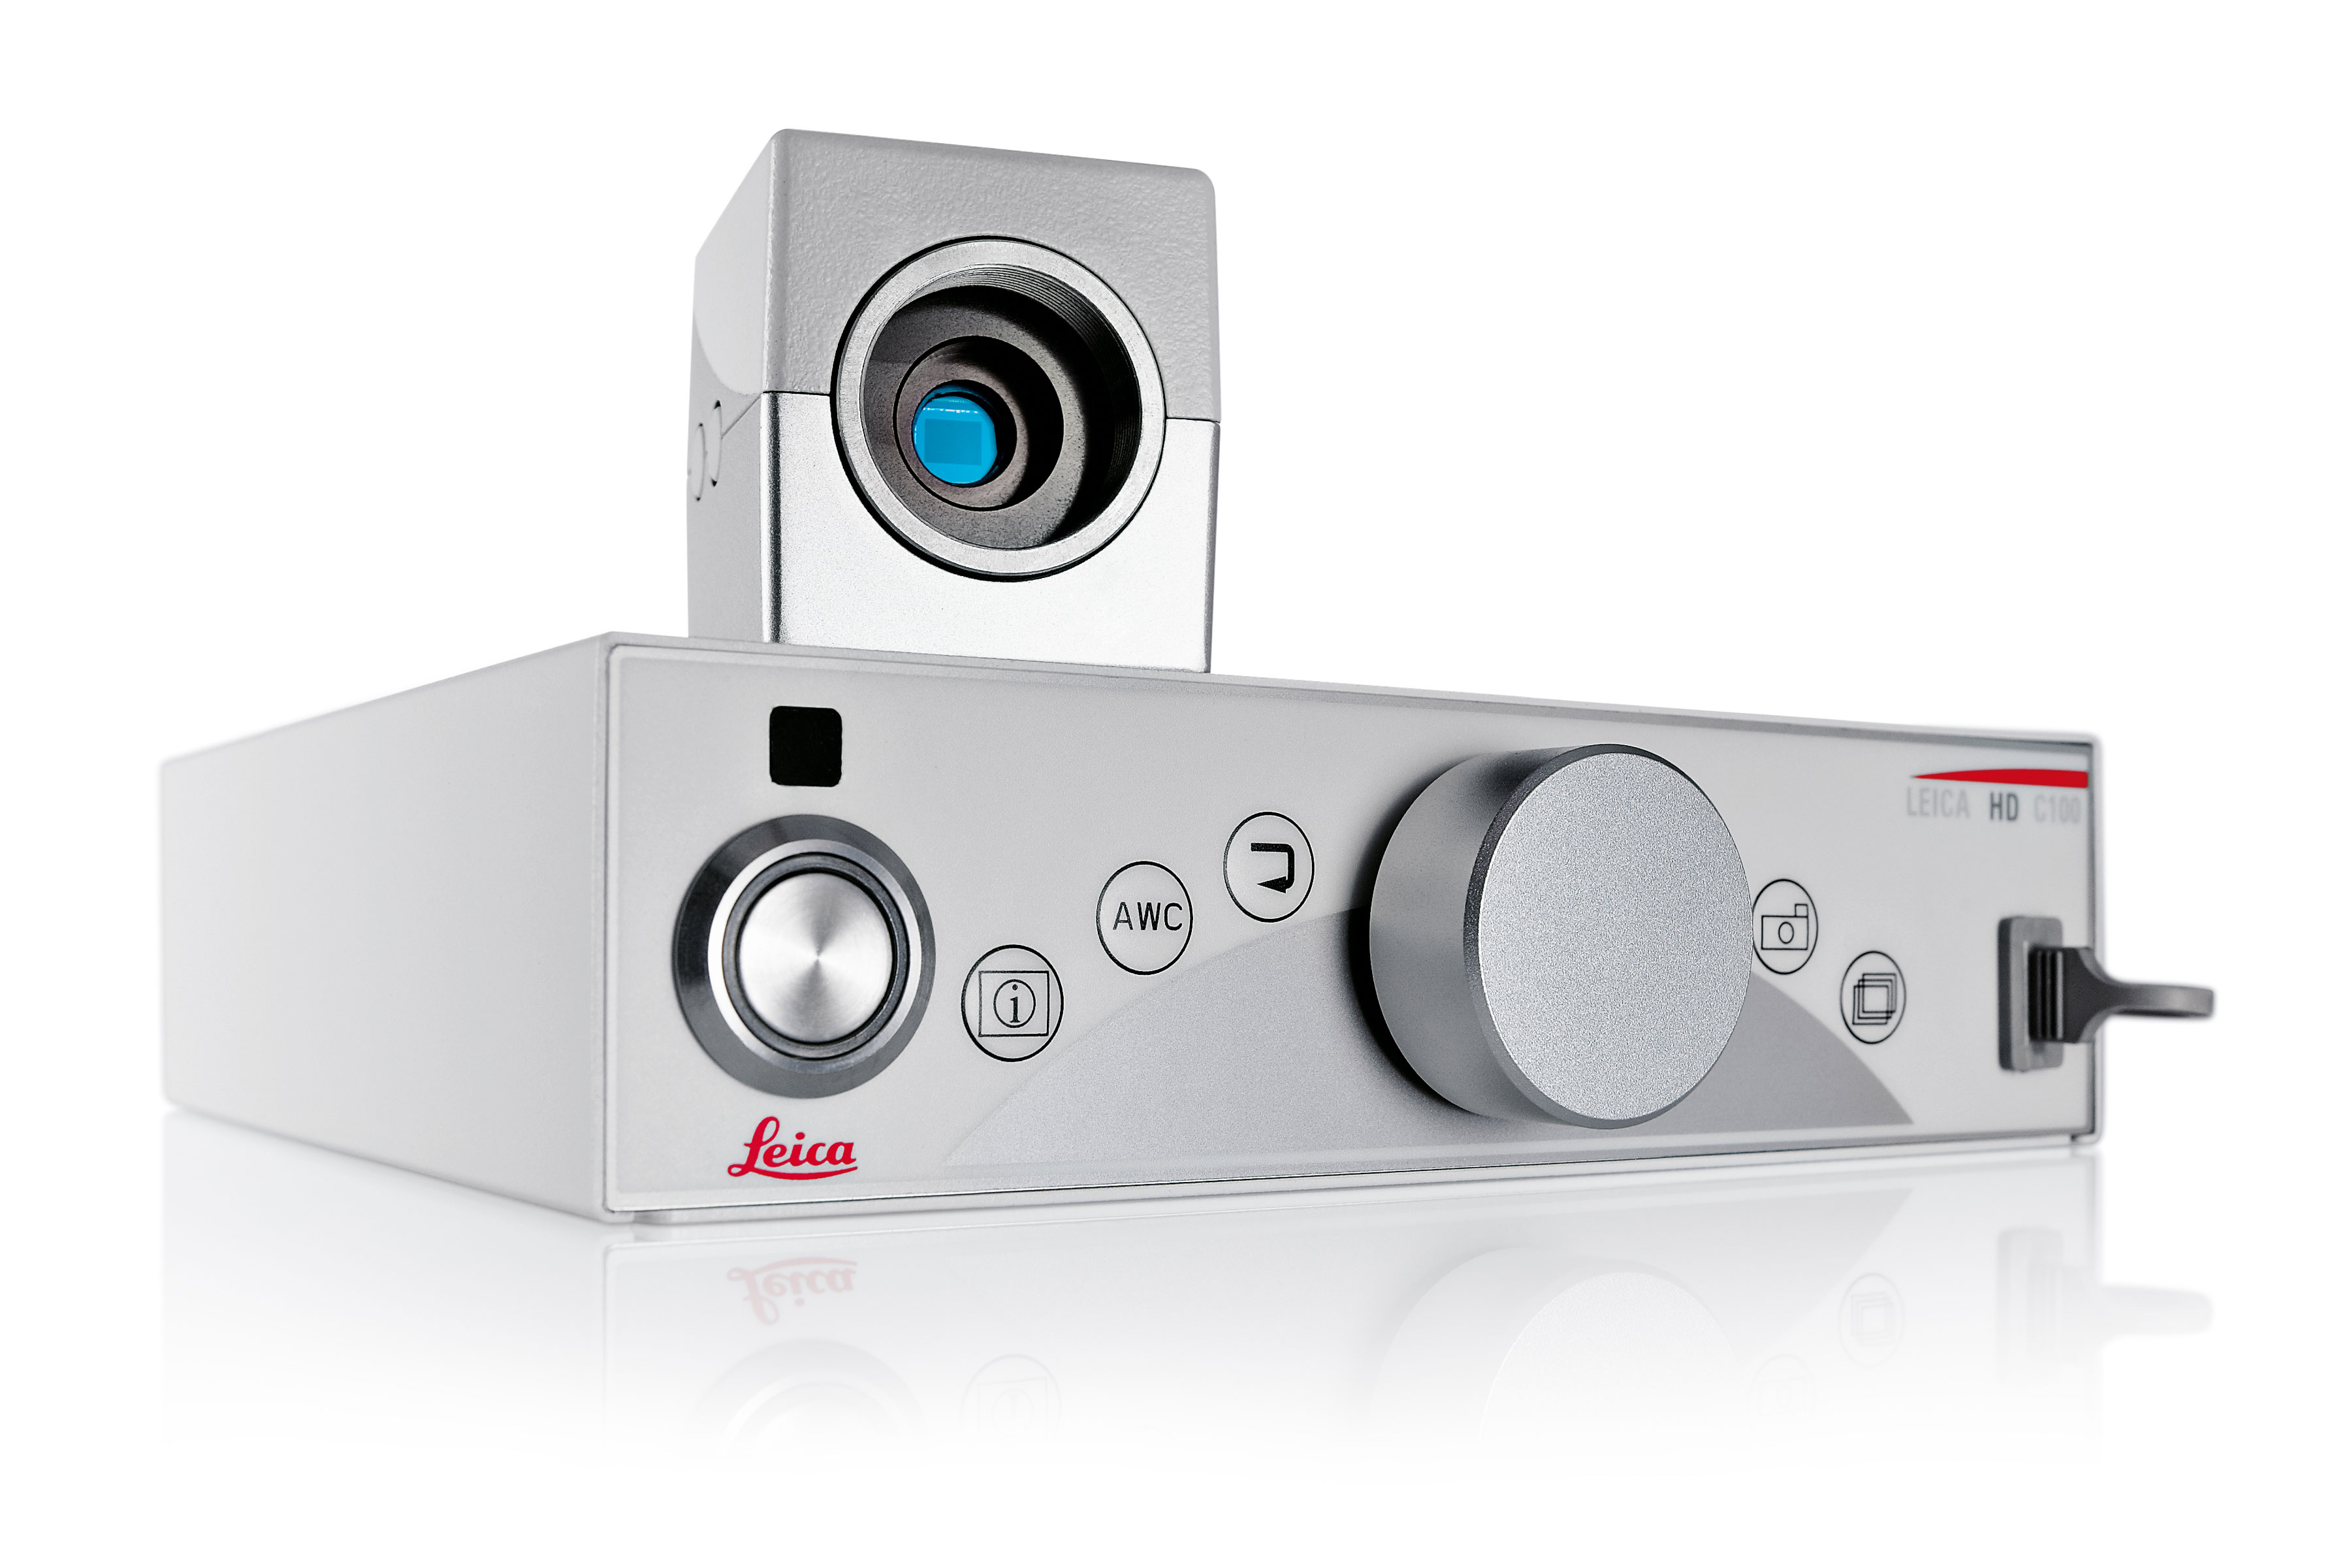 Videocamera medicale Leica HD C100 con risoluzione HD e SD, interfaccia utente intuitiva e rapido e facile trasferimento dei dati ai dispositivi di archiviazione esterni.